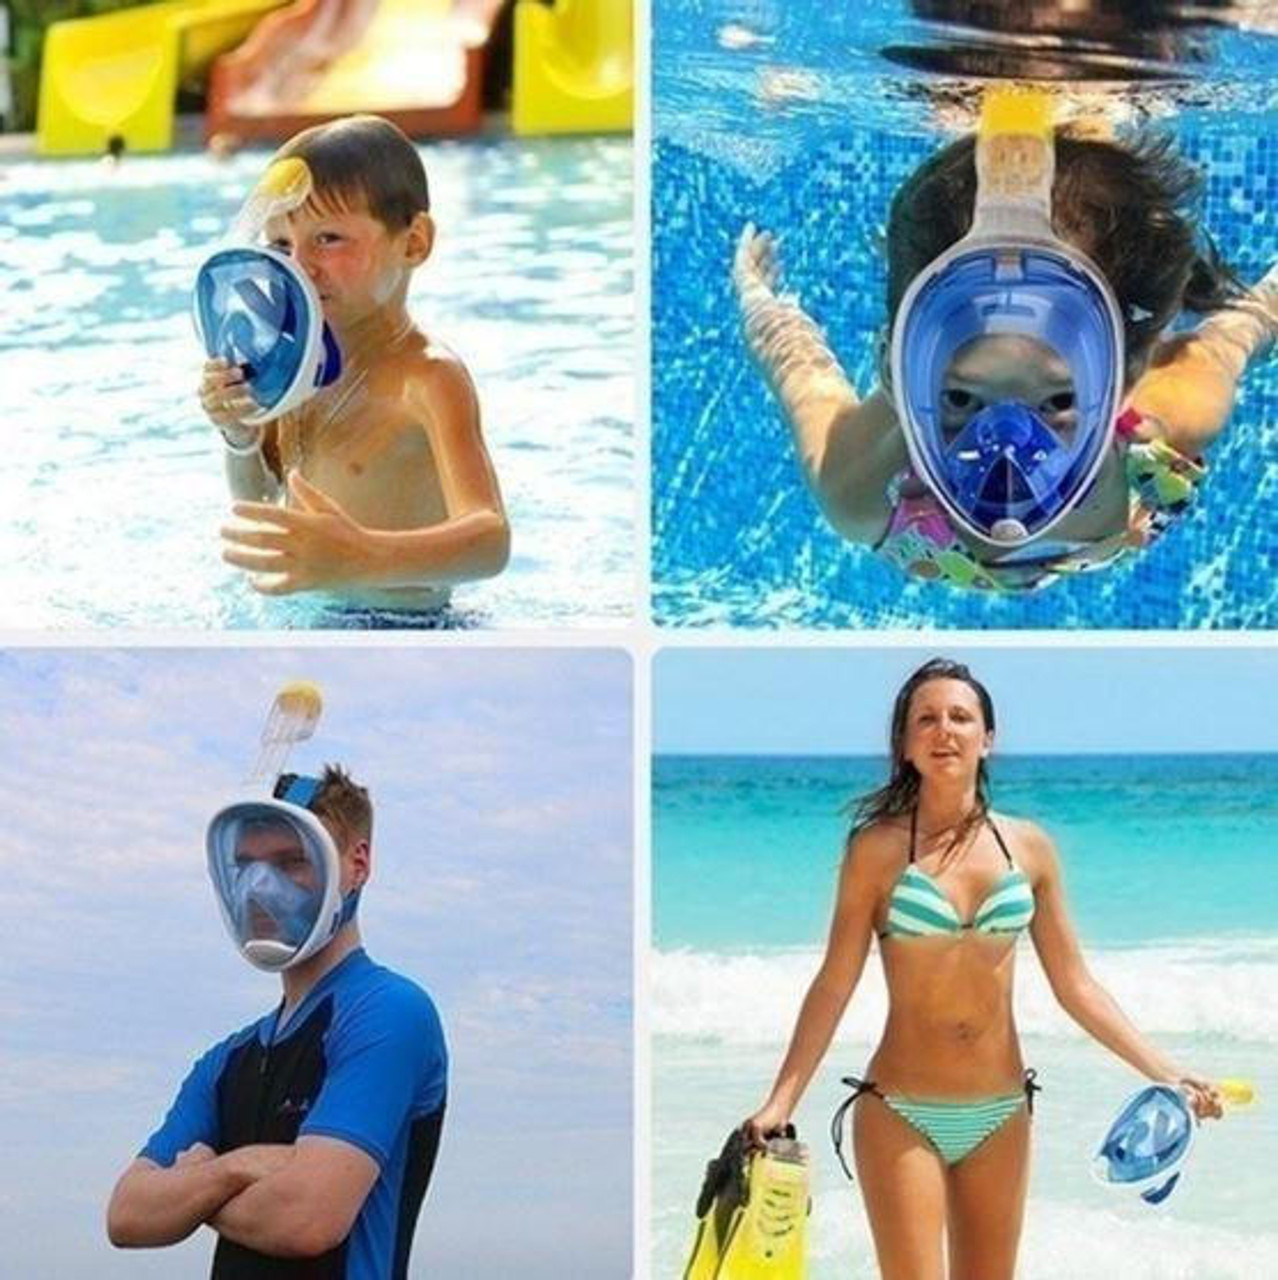 Vente Masque de plongée intégrale sous-marine anti-buée avec tuba respirant  et lunettes de natation - Banggood Français Mobile-arrival notice